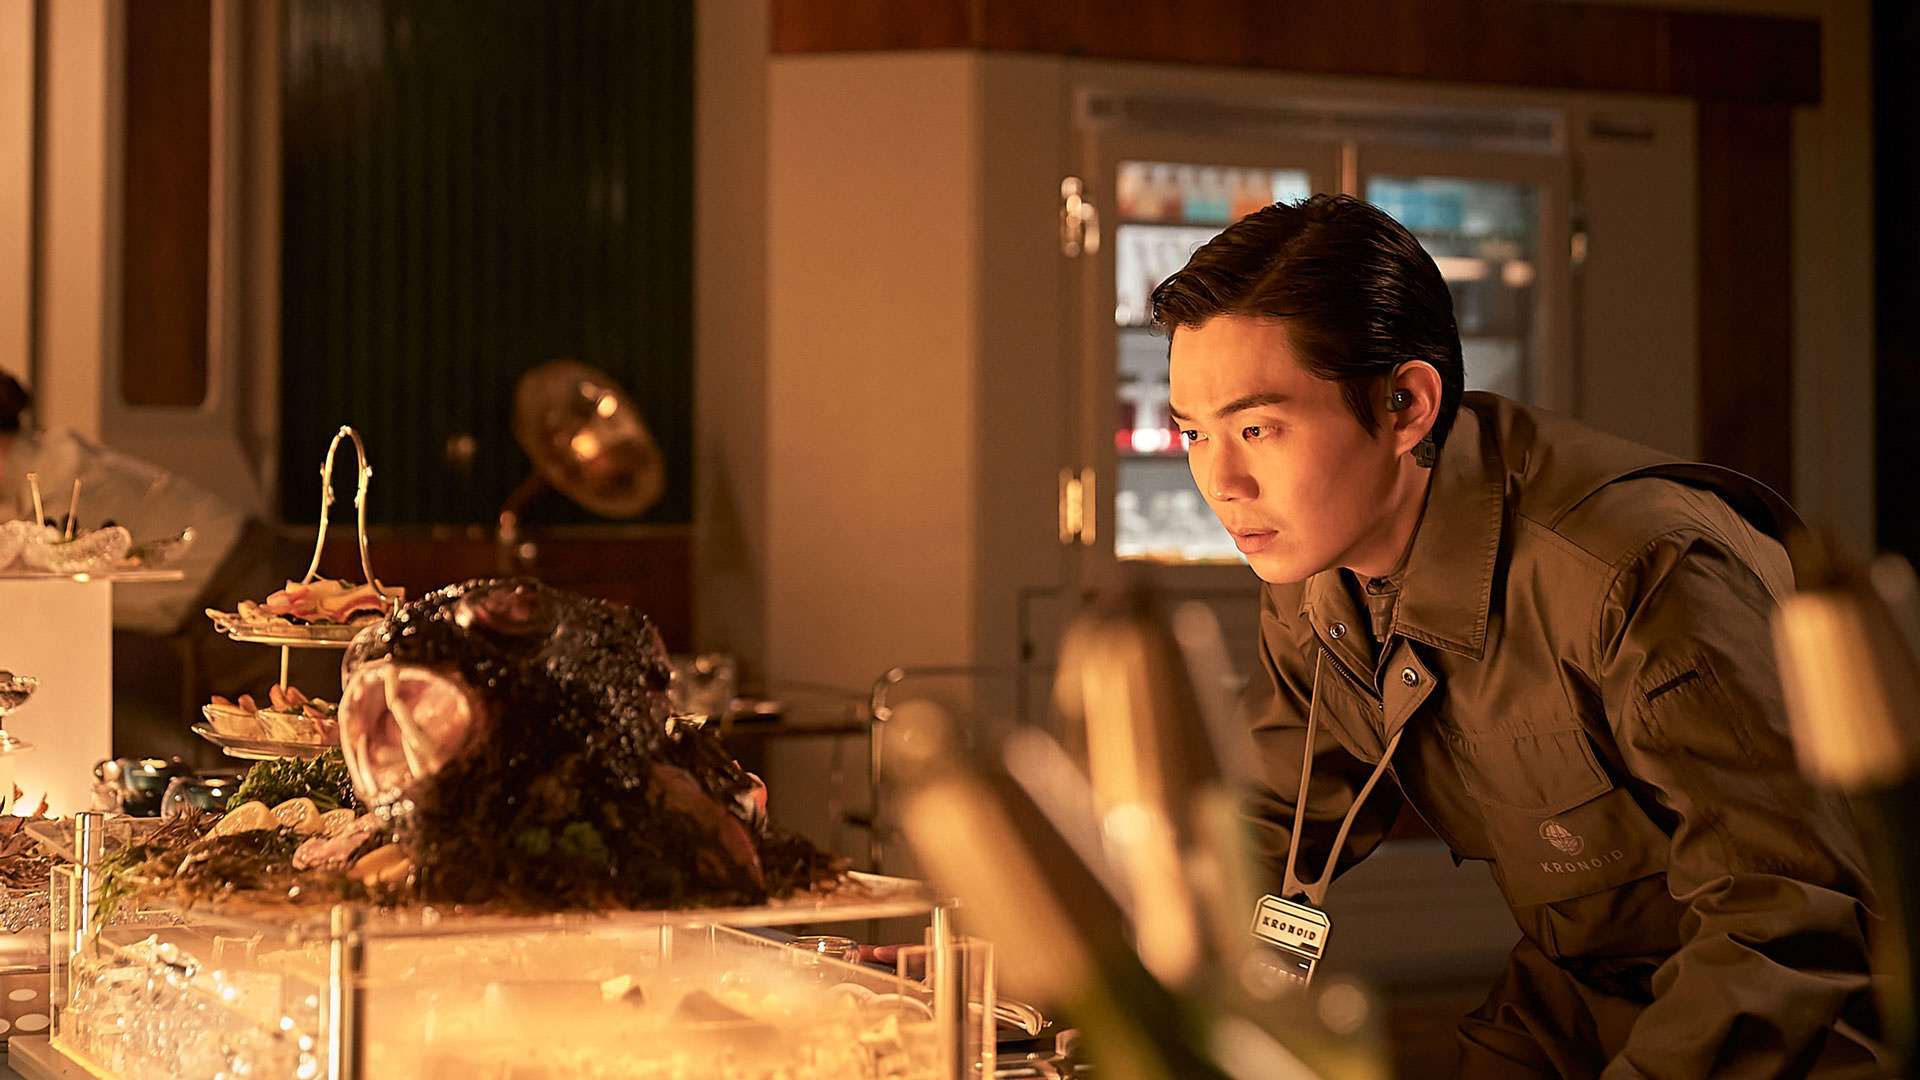 ریو کیونگ سو در حال نگاه کردن به میزی از غذاهای مجلسی در نمایی از فیلم جونگ ای به کارگردانی یون سانگ-هو